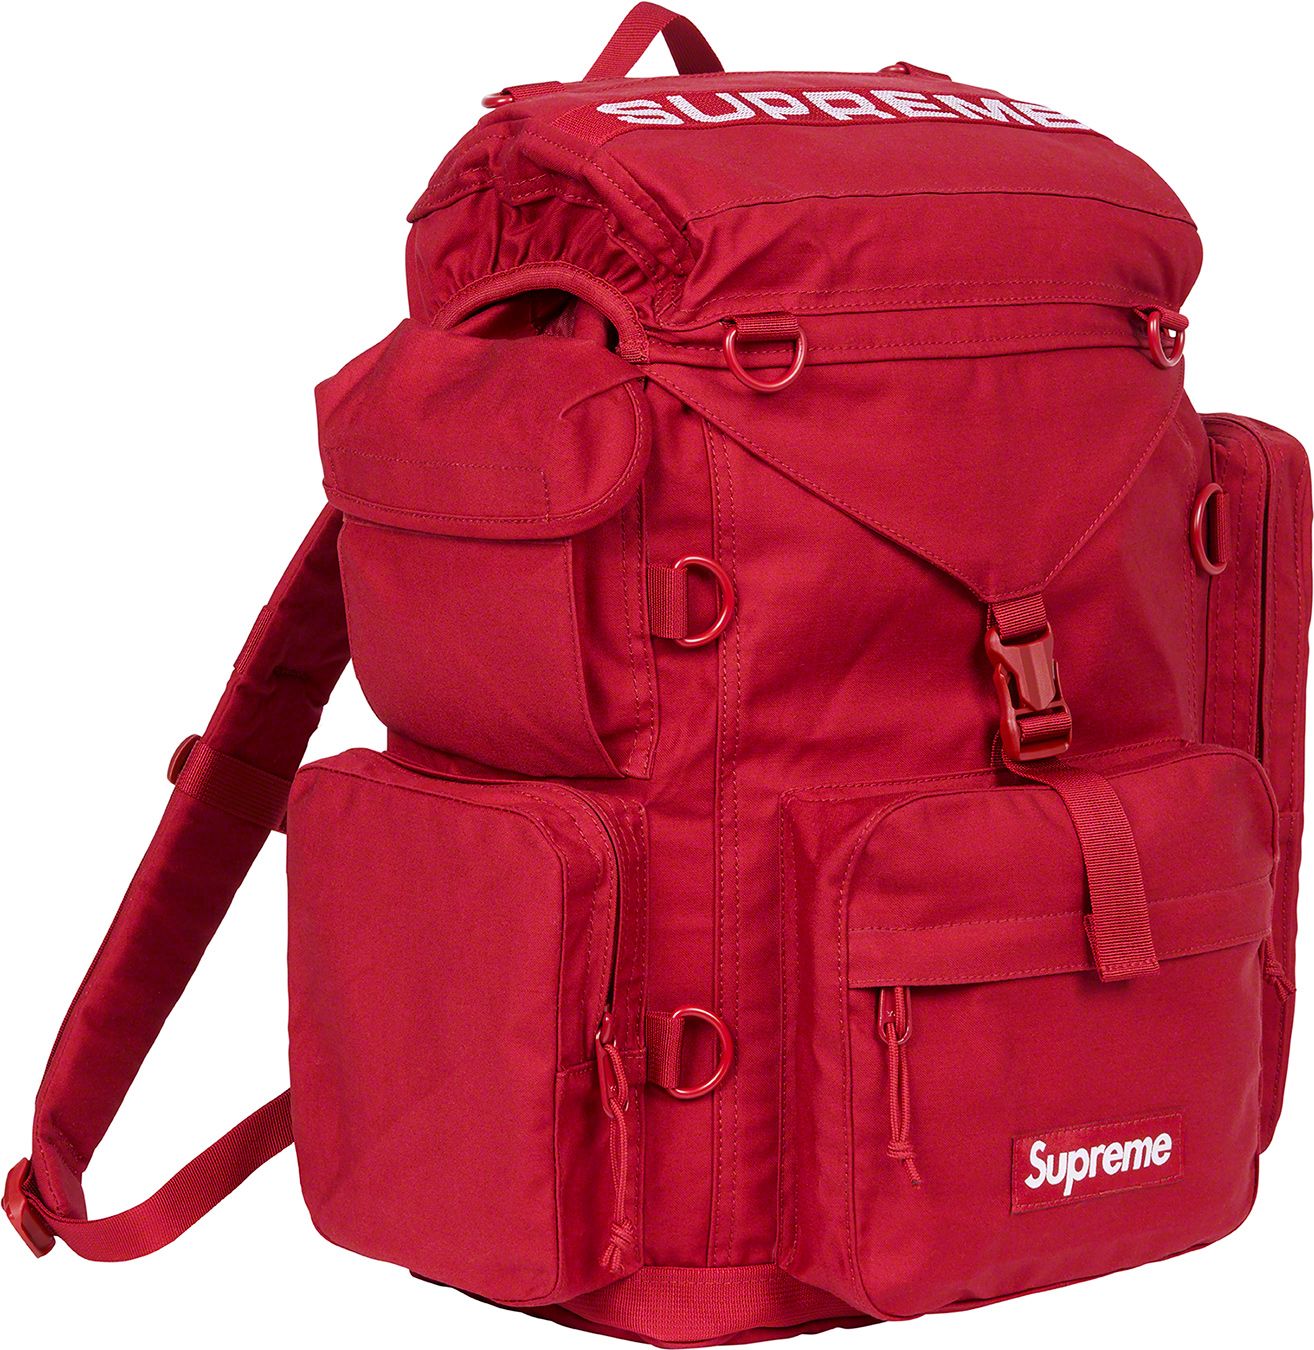 新品未使用品です新品 Supreme Field Backpack